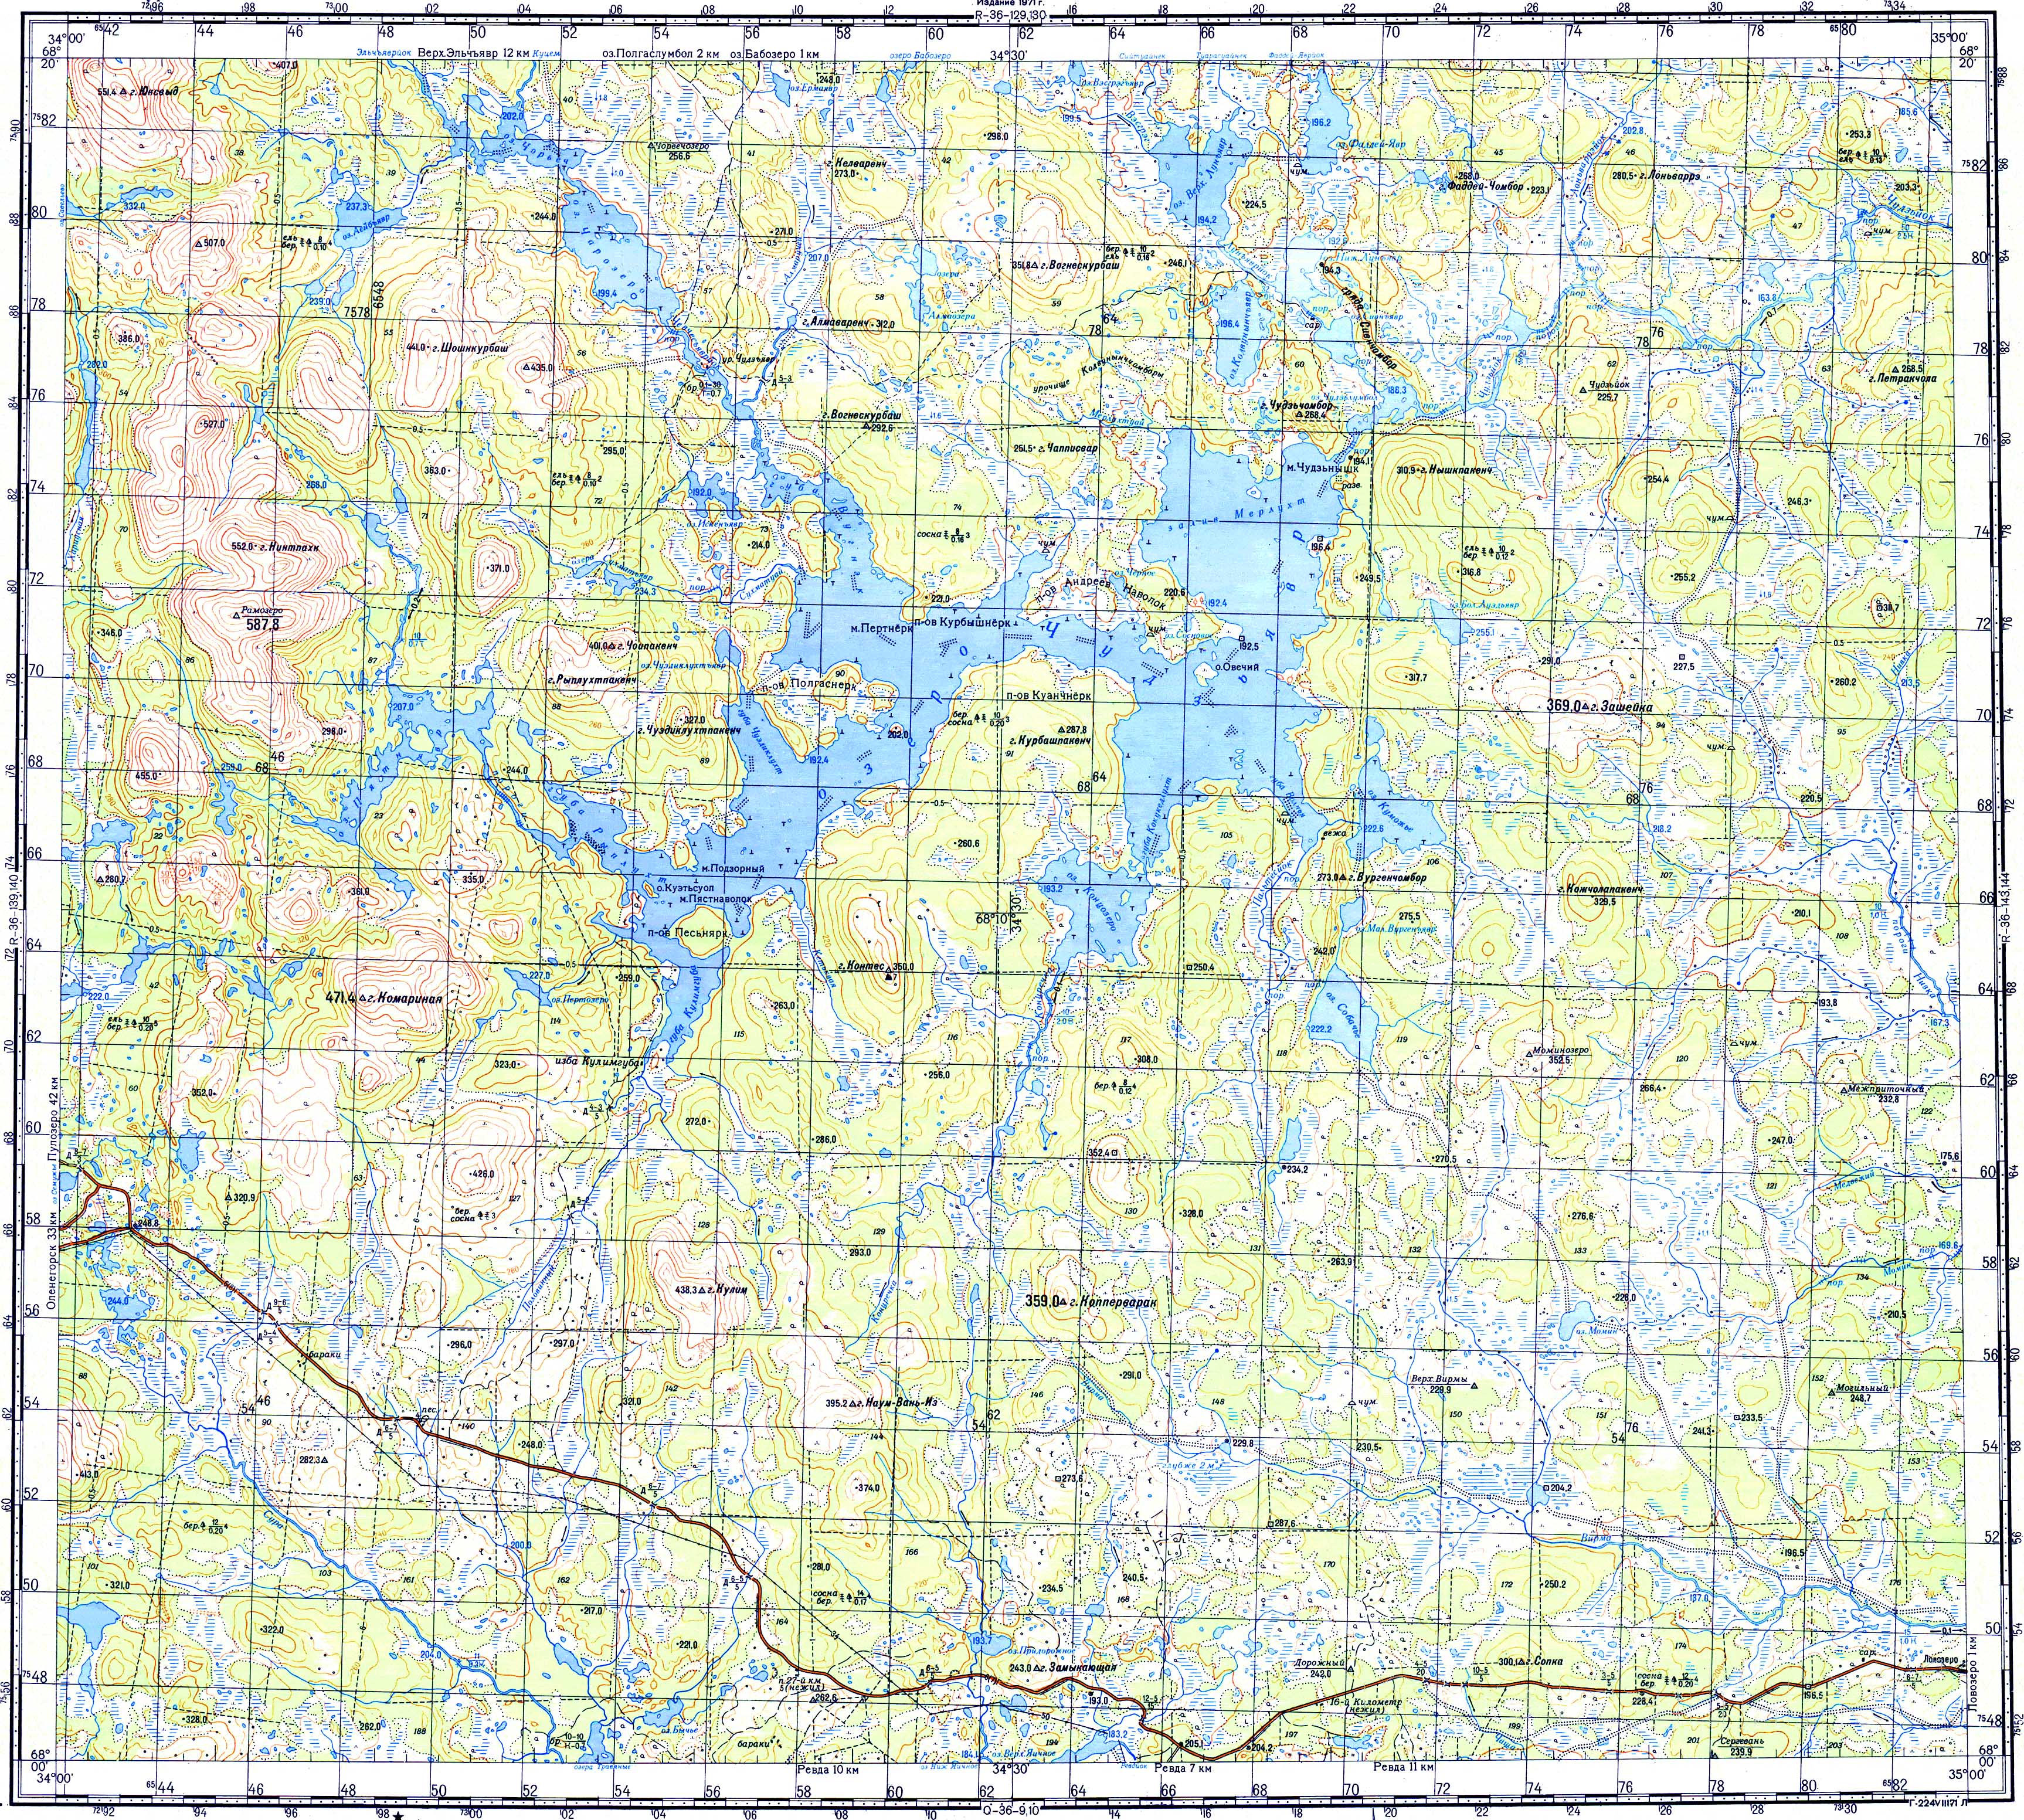 Топографические карты Генштаба / Карты листа R-37 (Кольский полуостров) / Карты масштаба 1:100000 (километровки) / Лист R-36-141,142 (озеро Чудзъявр)